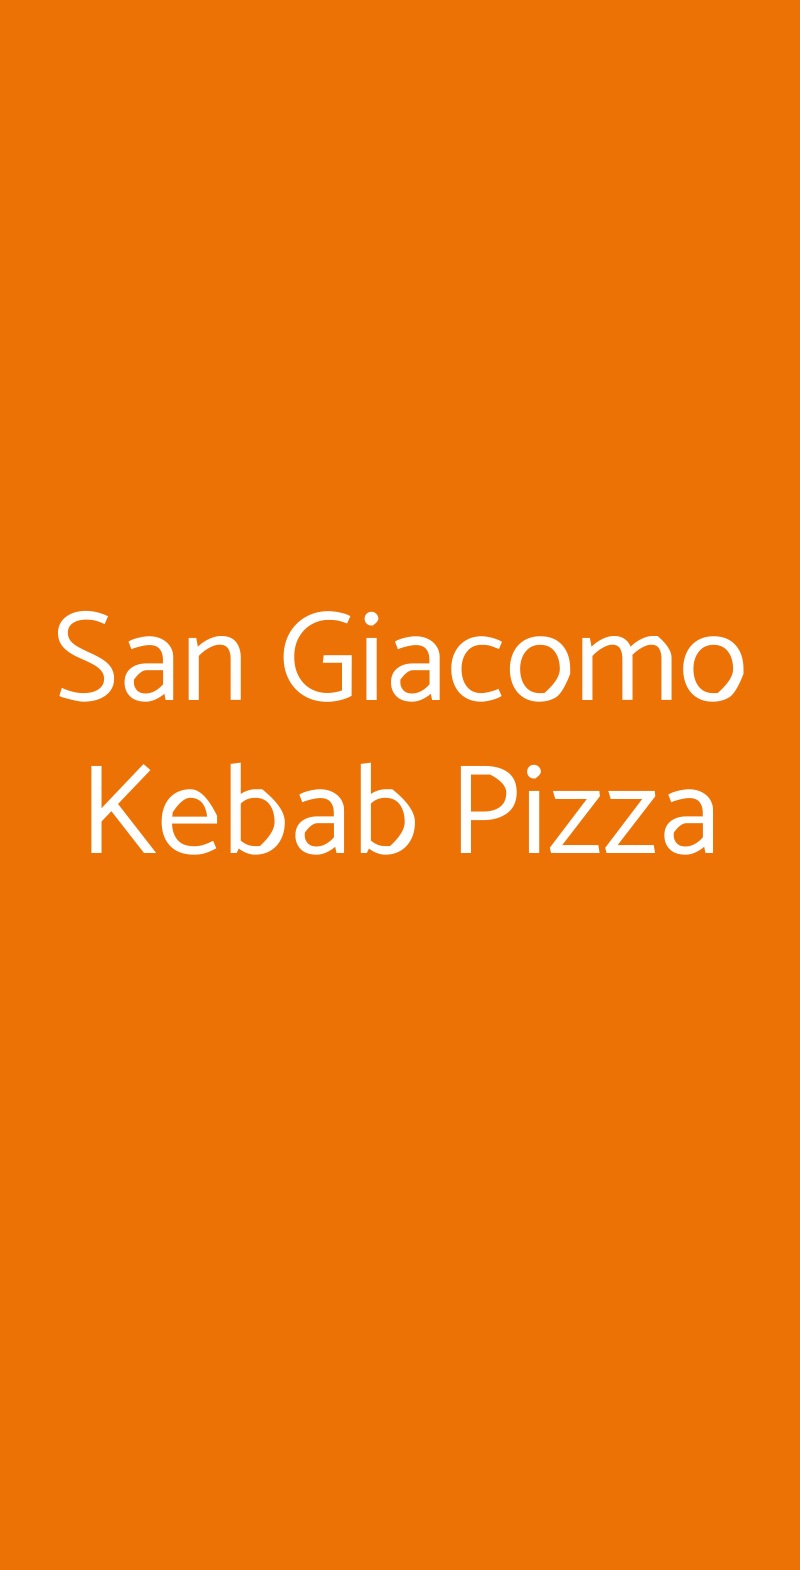 San Giacomo Kebab Pizza Trieste menù 1 pagina